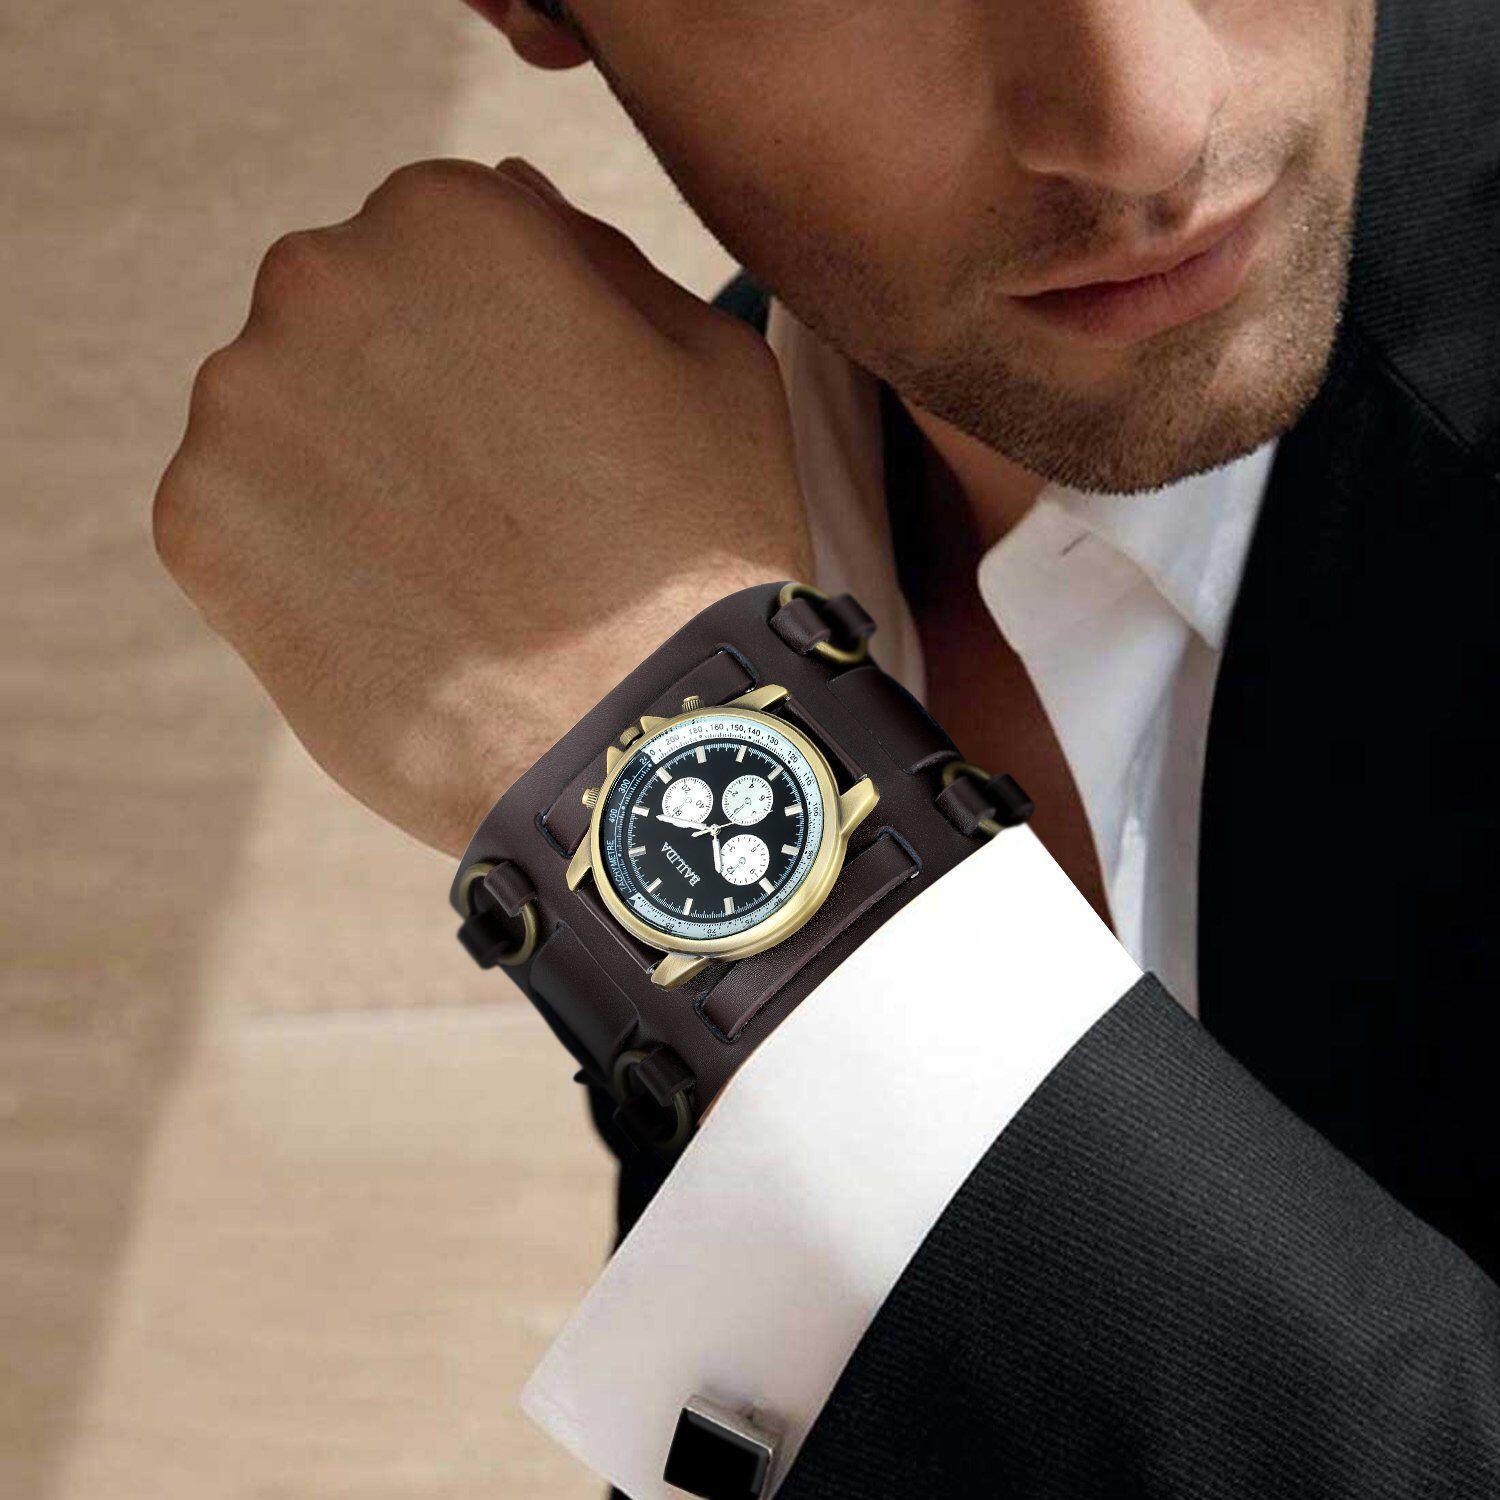 Какие есть часы на руку. Часы мужские. Красивые мужские часы. Часы на руке. Мужские часы на руке.